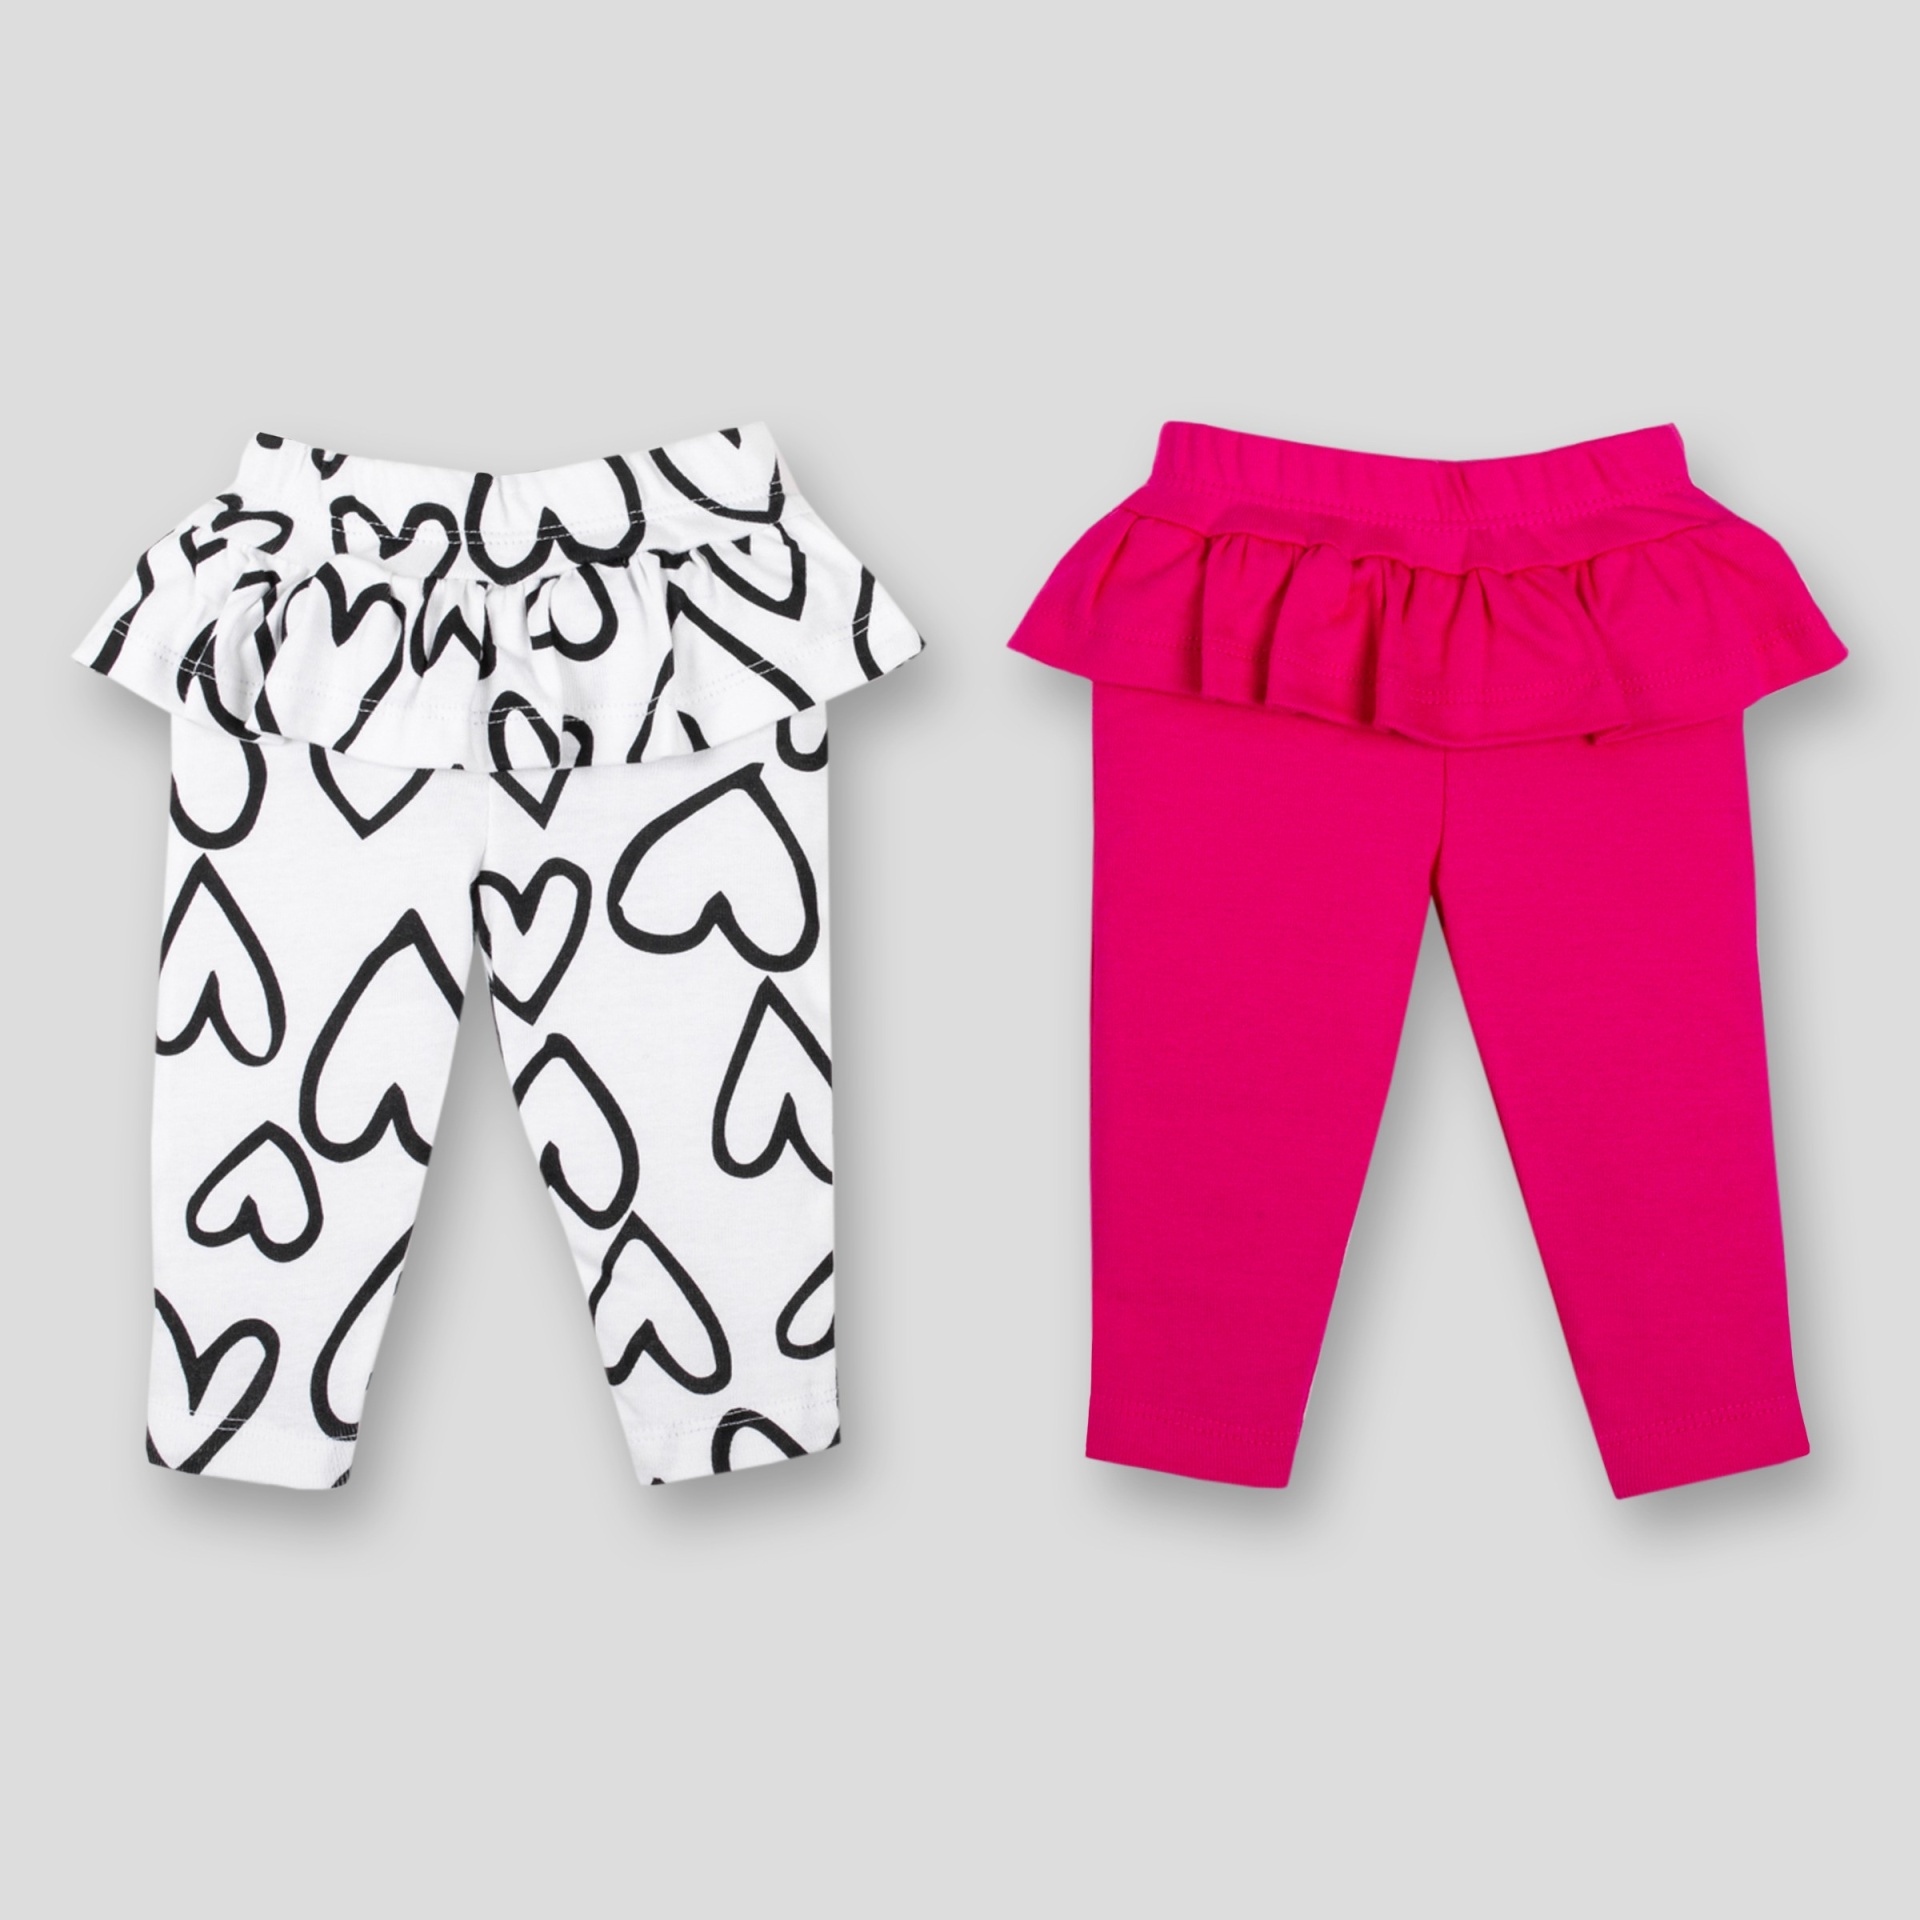 slide 1 of 3, Lamaze Baby Girls' 2pk Organic Cotton Ruffle Pants - Pink Newborn, 2 ct